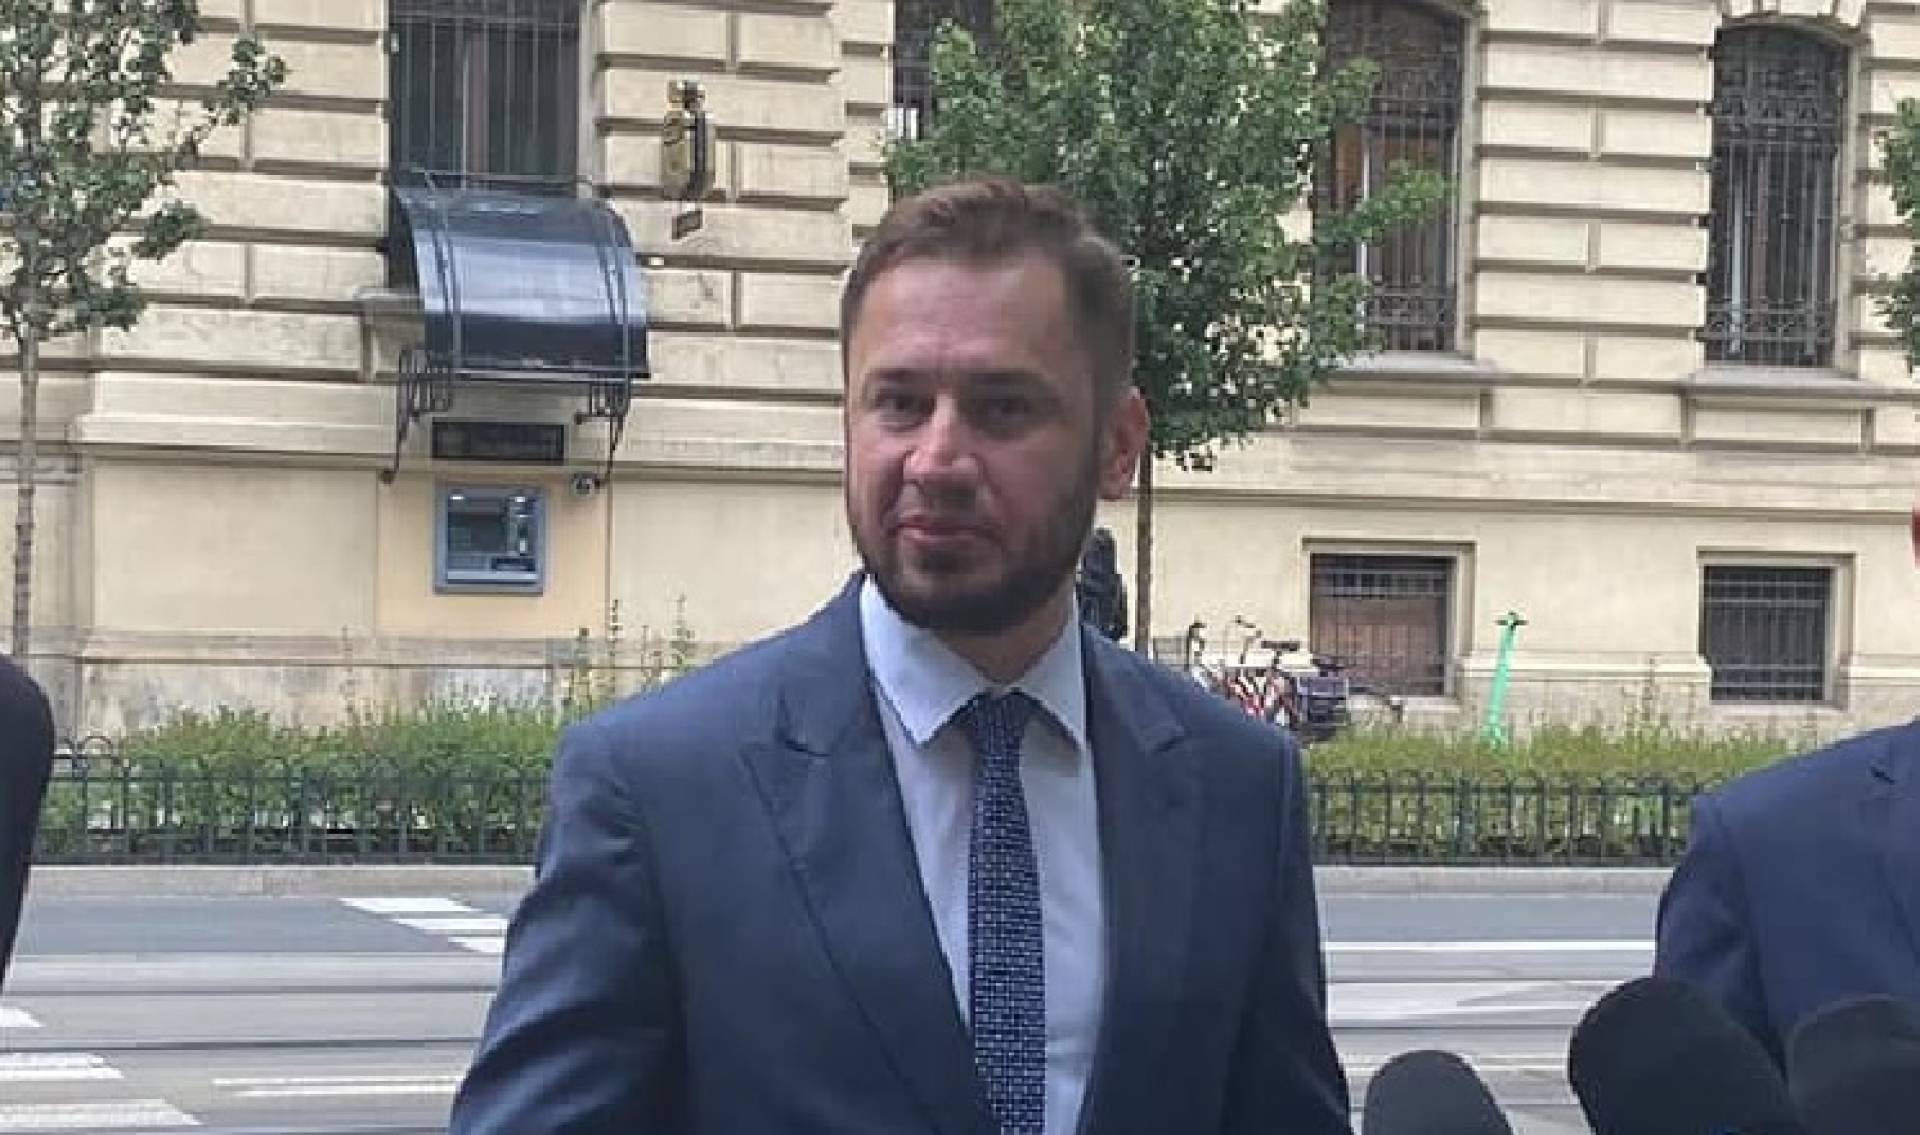 Kurator Nowak wykorzystuje tragedię do ataku na posła PO. A. Miszalski: "nie zostawię tego"